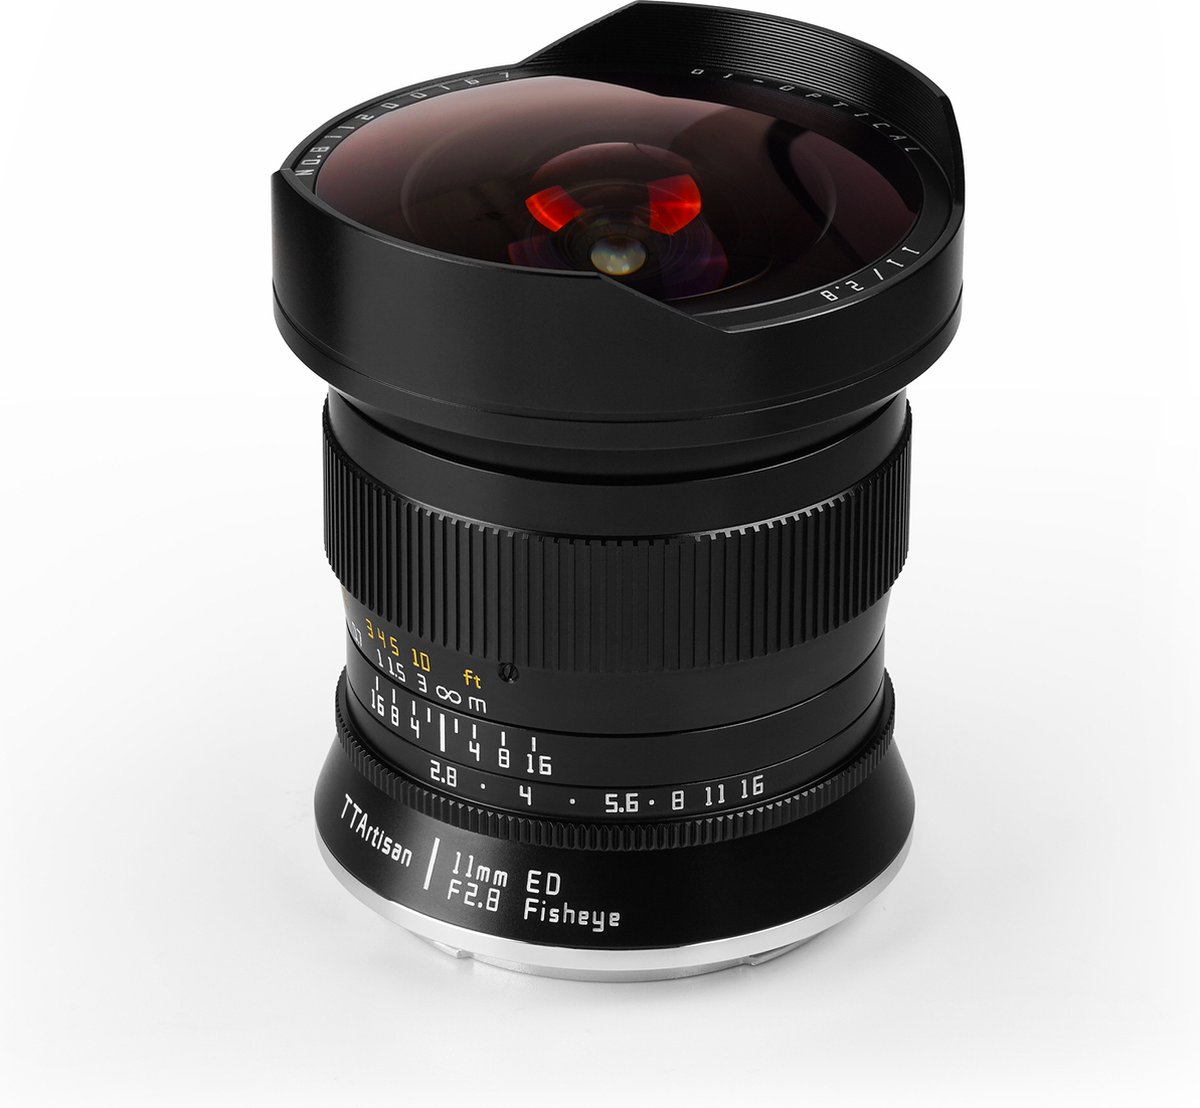 TT Artisan - Camera Lans - 11mm F2.8 voor Sigma/Leica L vatting (Full Frame), zwart